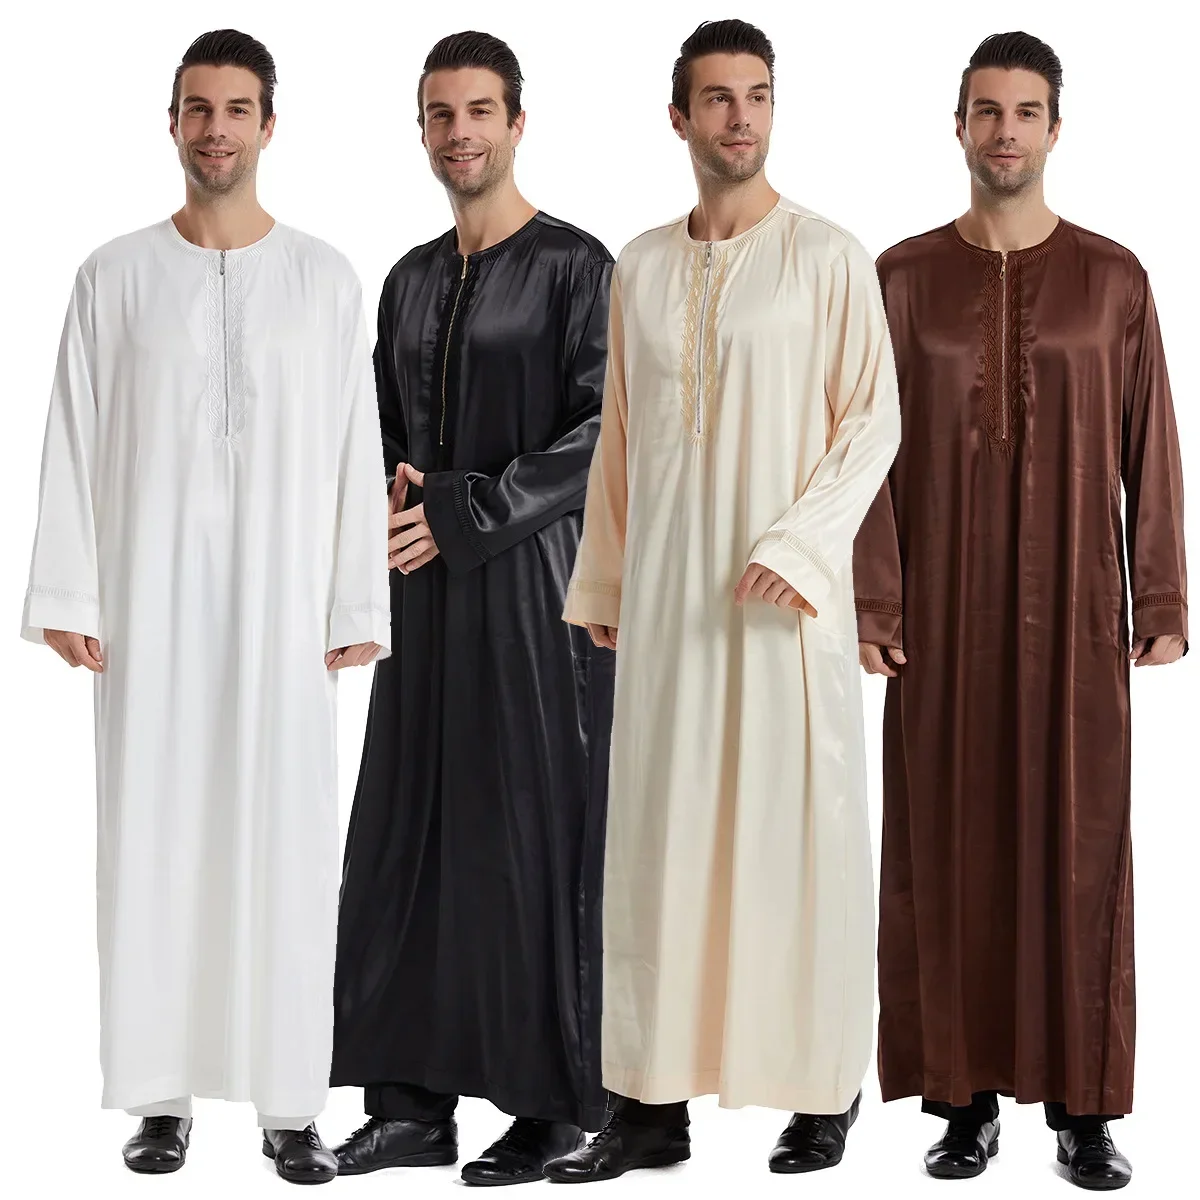 Рамадан, джубба, табос, кафтан, абайя, Дубай, арабское мусульманское платье, мужские юббы, мусульманские Абайи для молитвенной одежды, мужская одежда